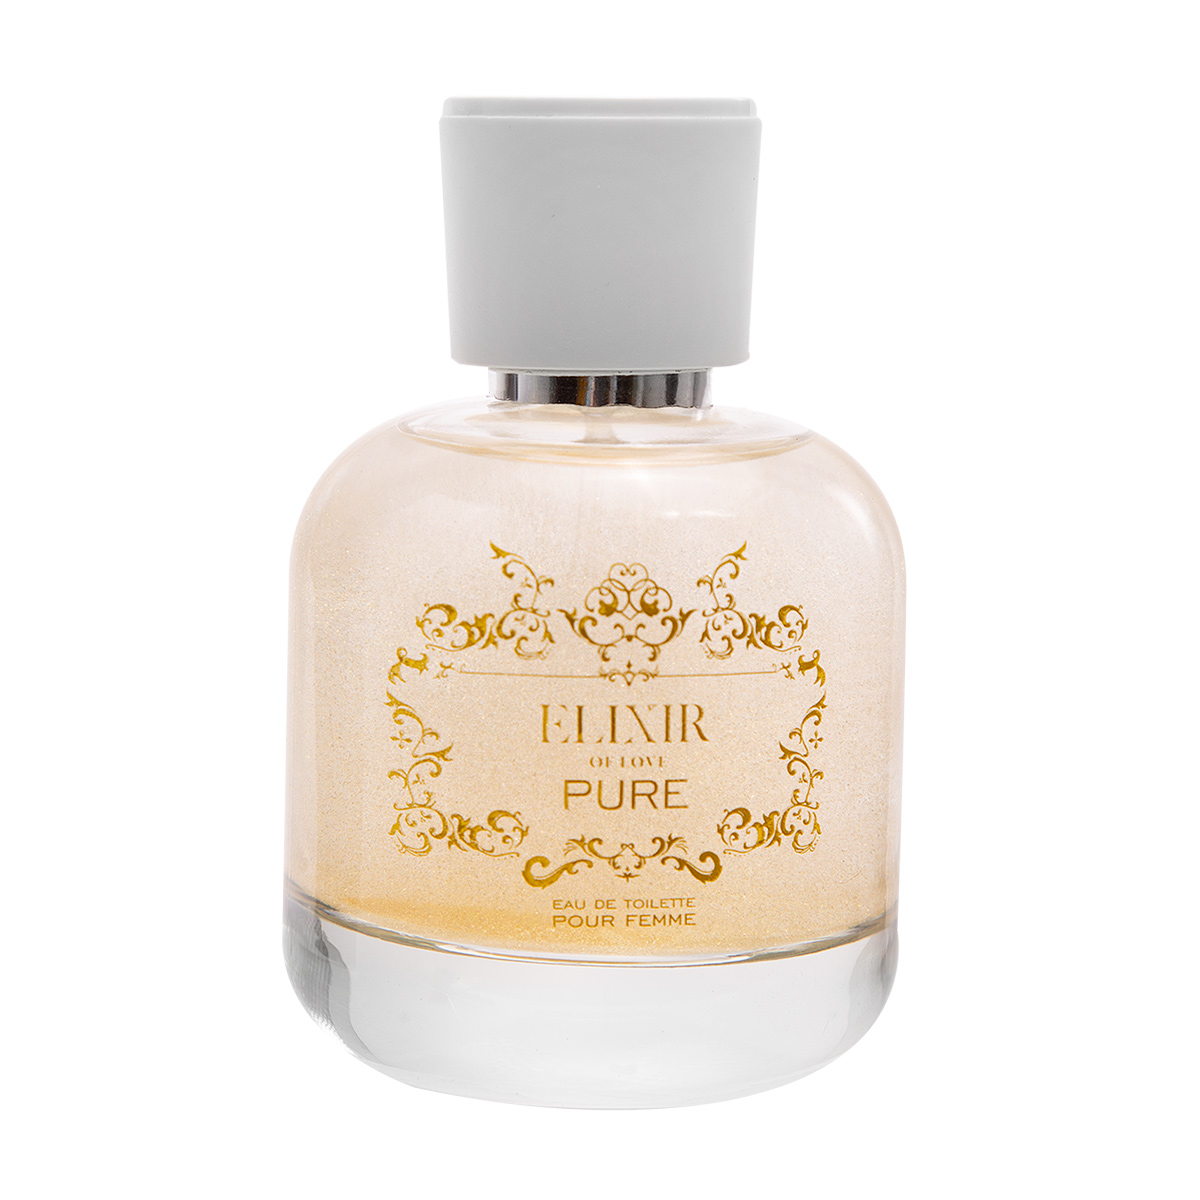 elixir of love набор женского парфюма 2 в 1 с шиммером Набор женского парфюма Elixir с шиммером (3 шт. по 100 мл)